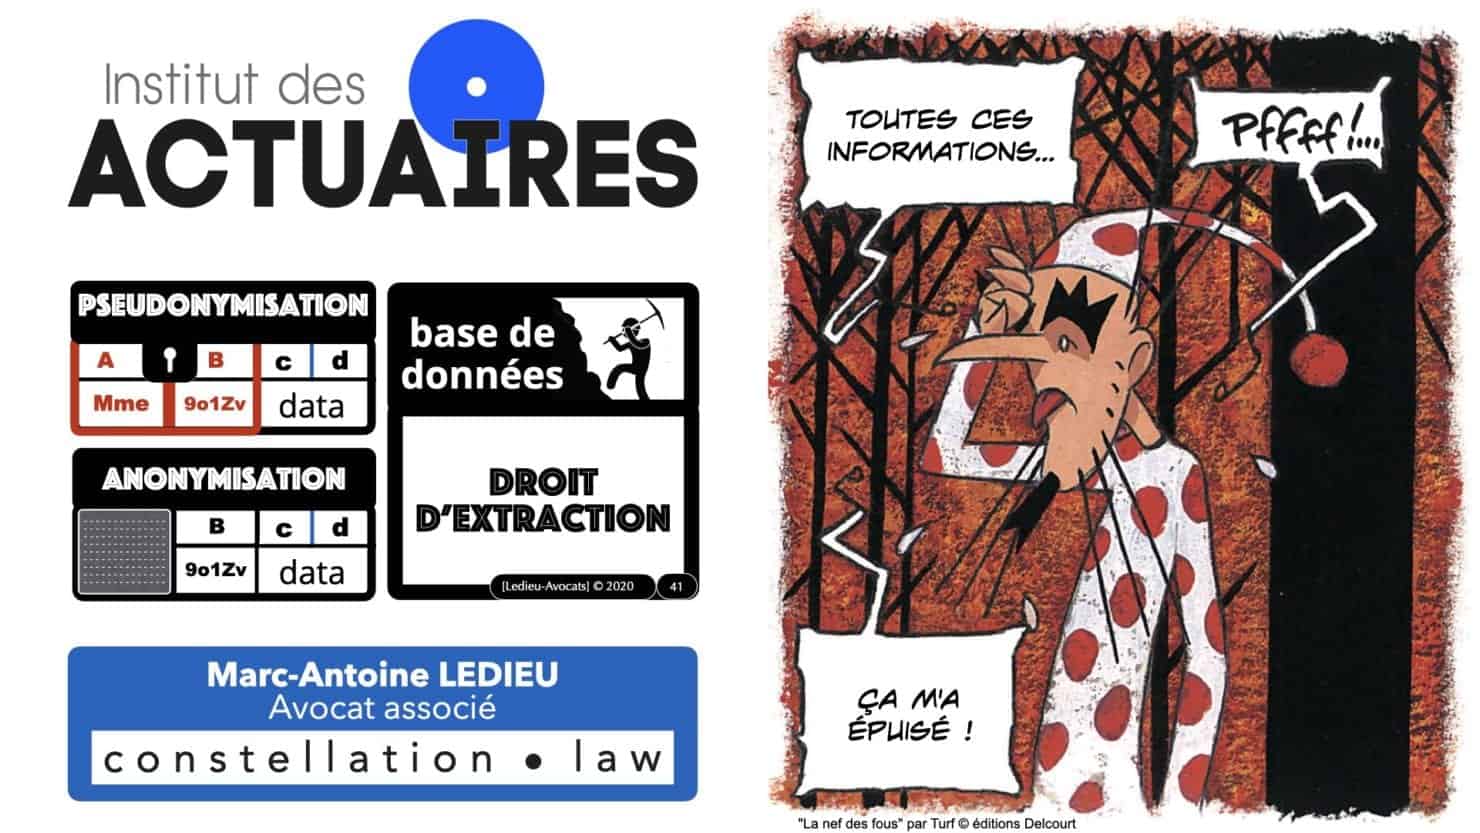 309 pseudonymisation et anonymisation des bases de données pour ACTUAIRE *16:9* © Ledieu-avocat 01-11-2020.041